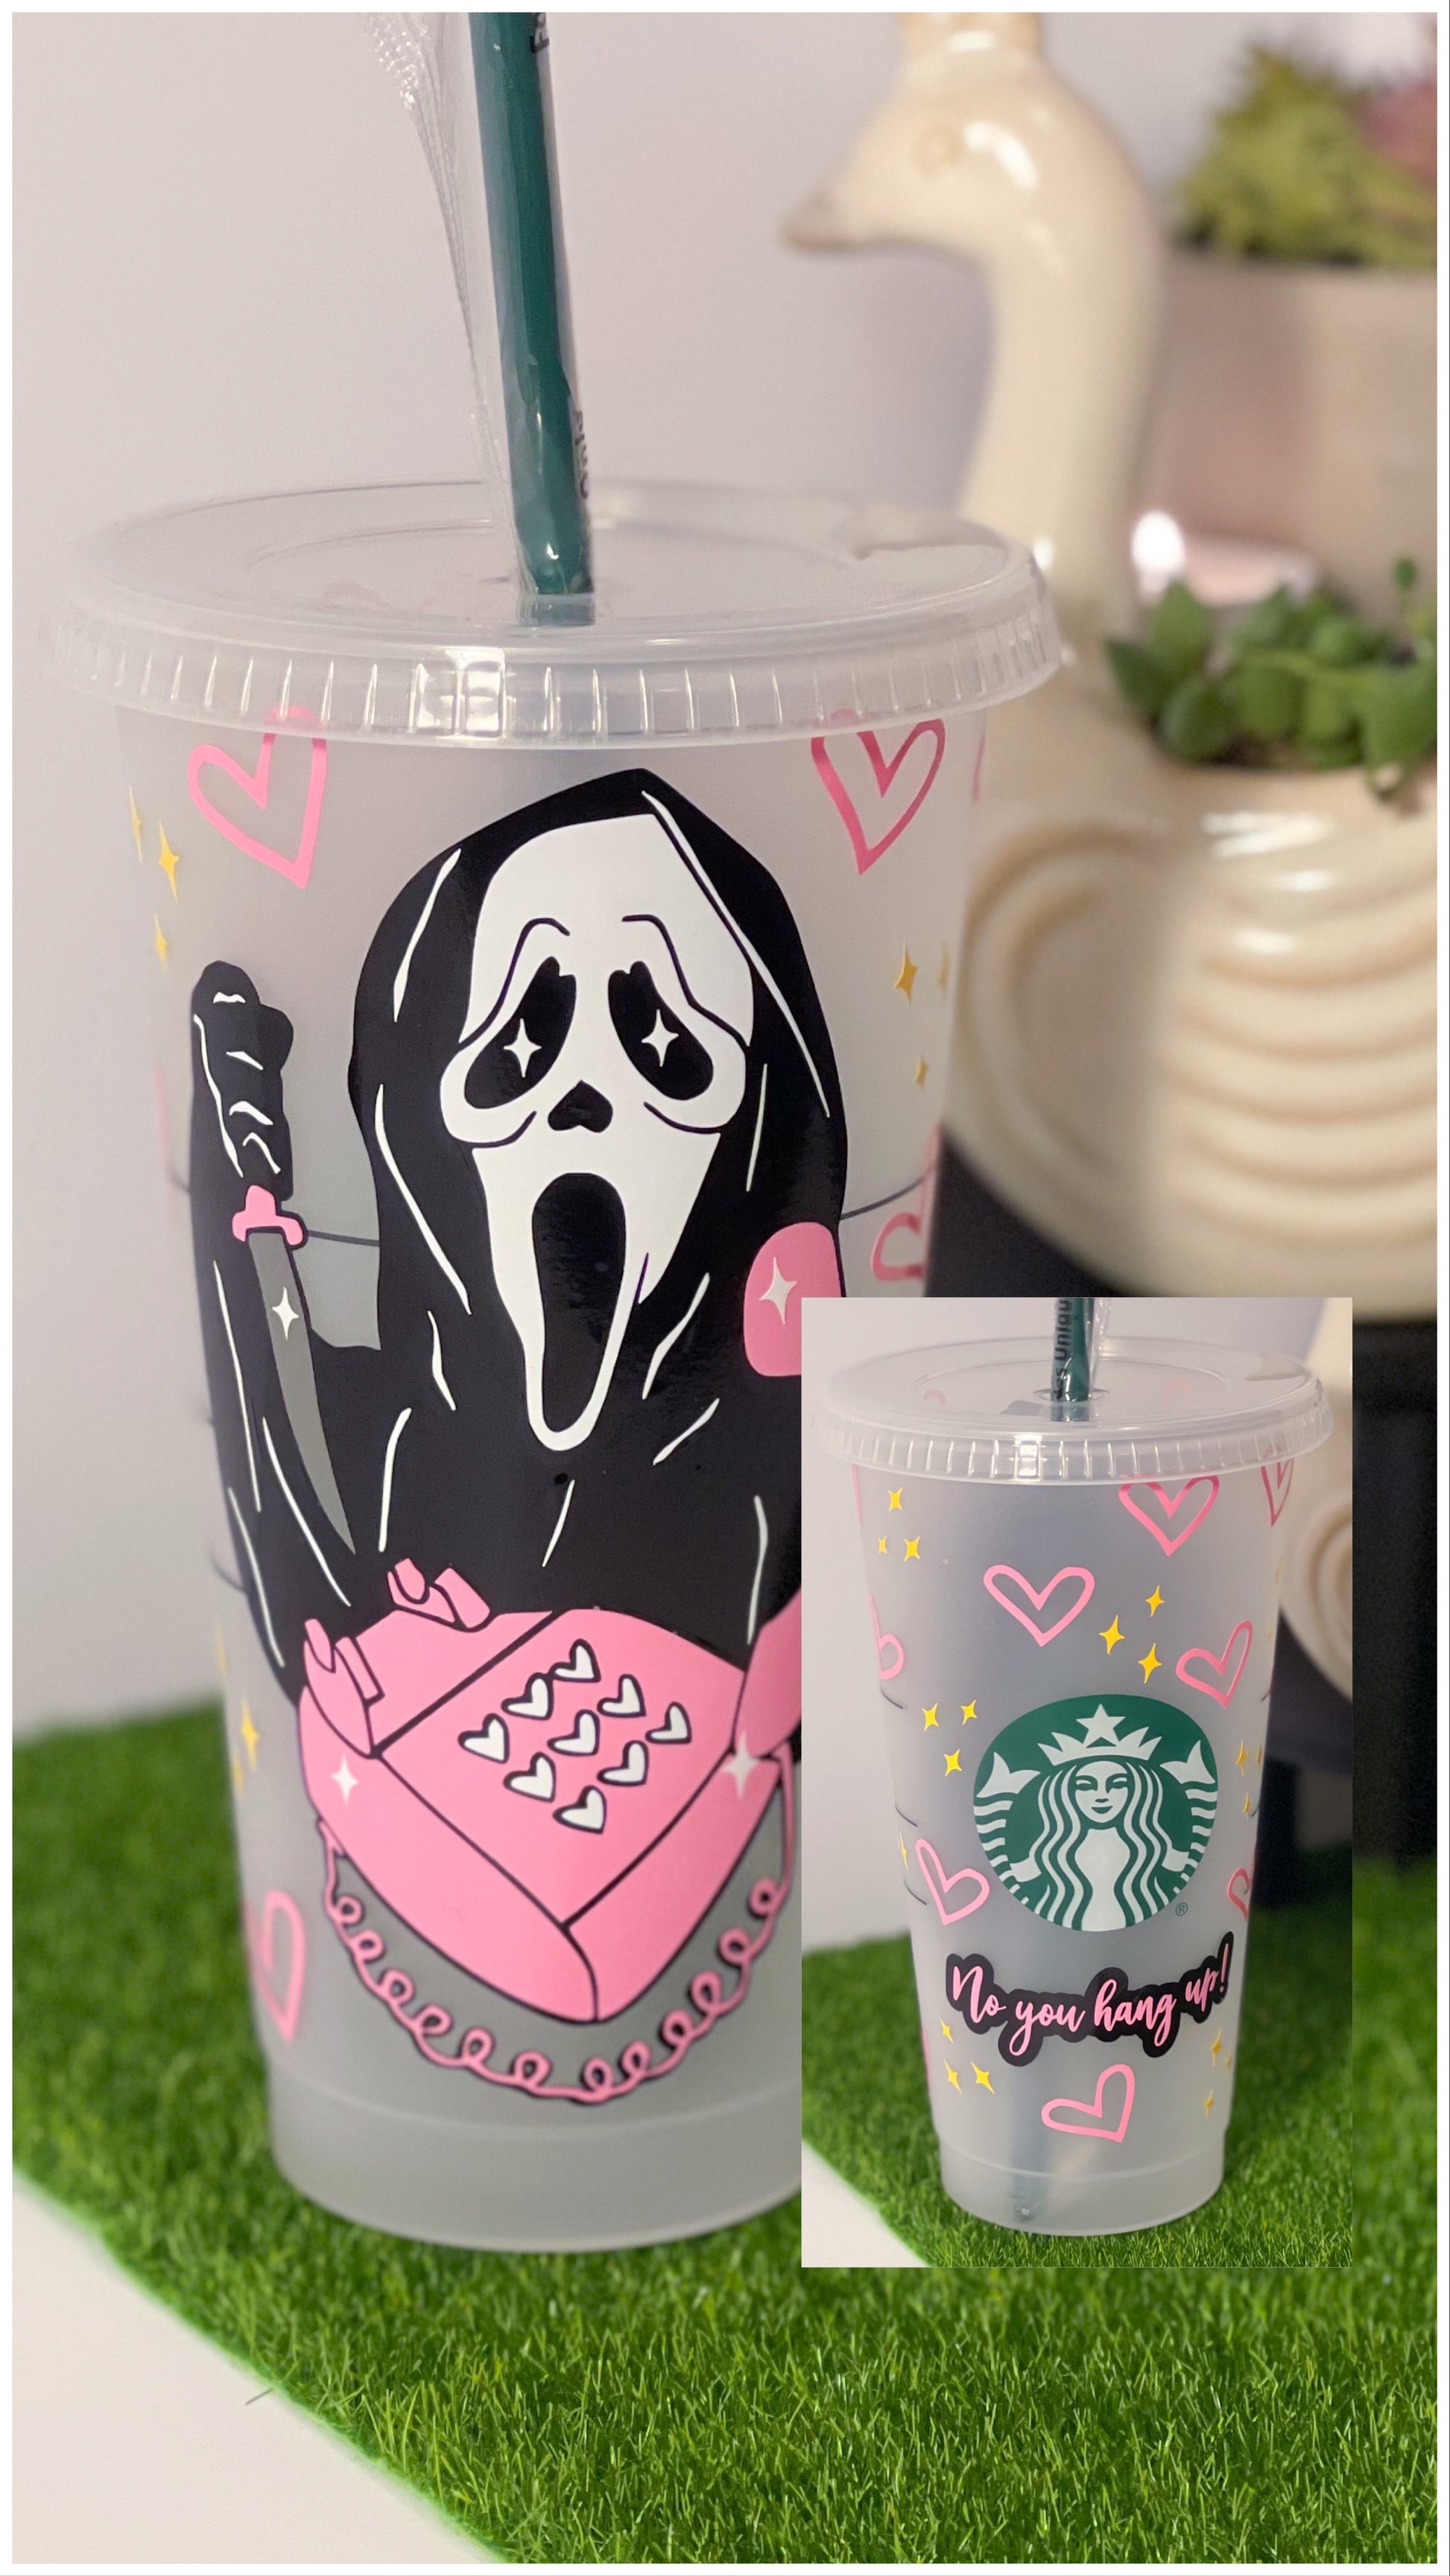 24oz Scream Starbucks Cold cup